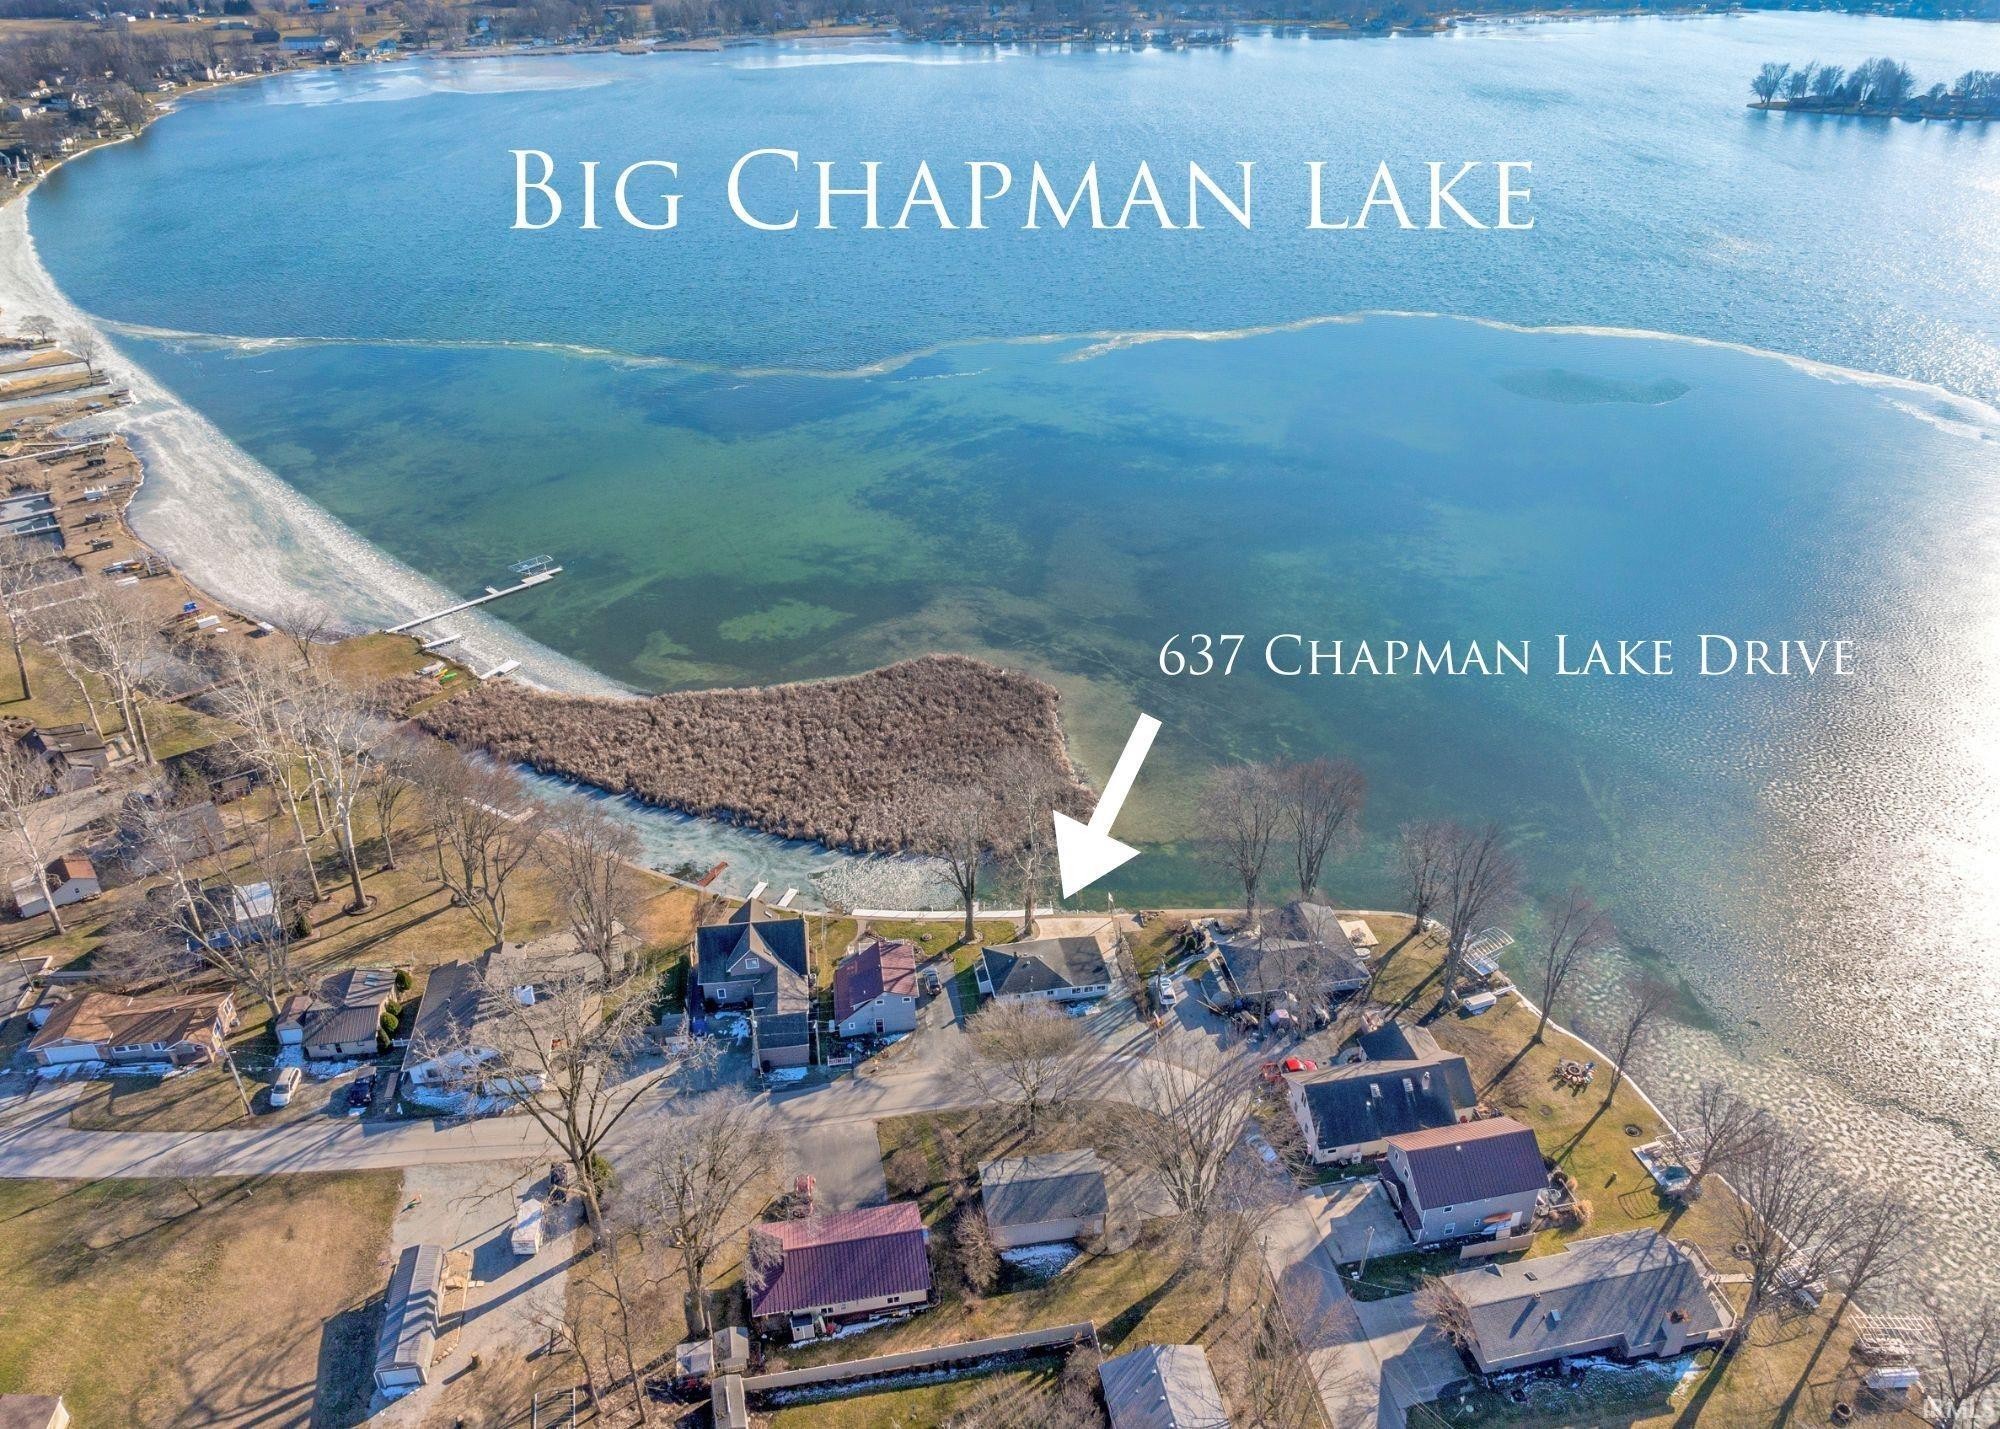 1. 637 Chapman Lake Drive